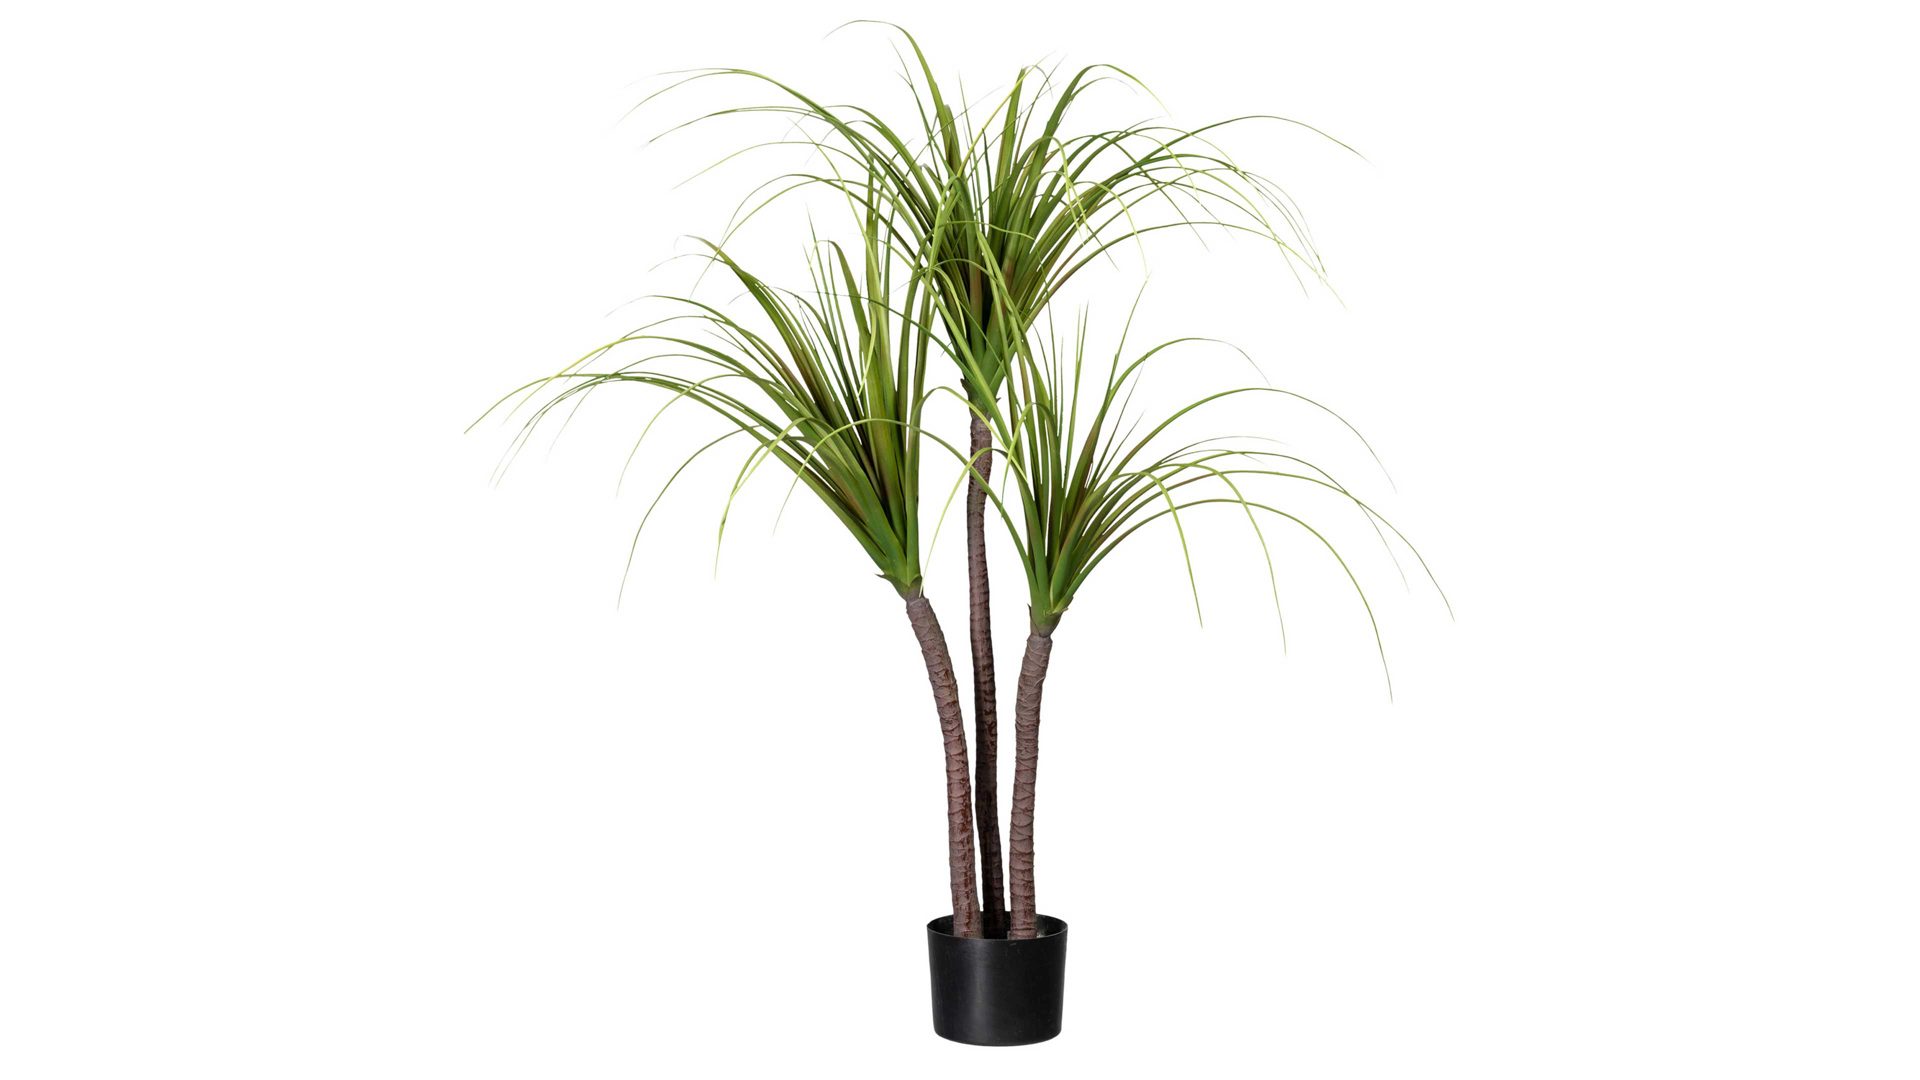 Pflanze Gasper aus Kunststoff in Grün Drachenbaum grüner Kunststoff & schwarzer Topf – Höhe ca. 120 cm